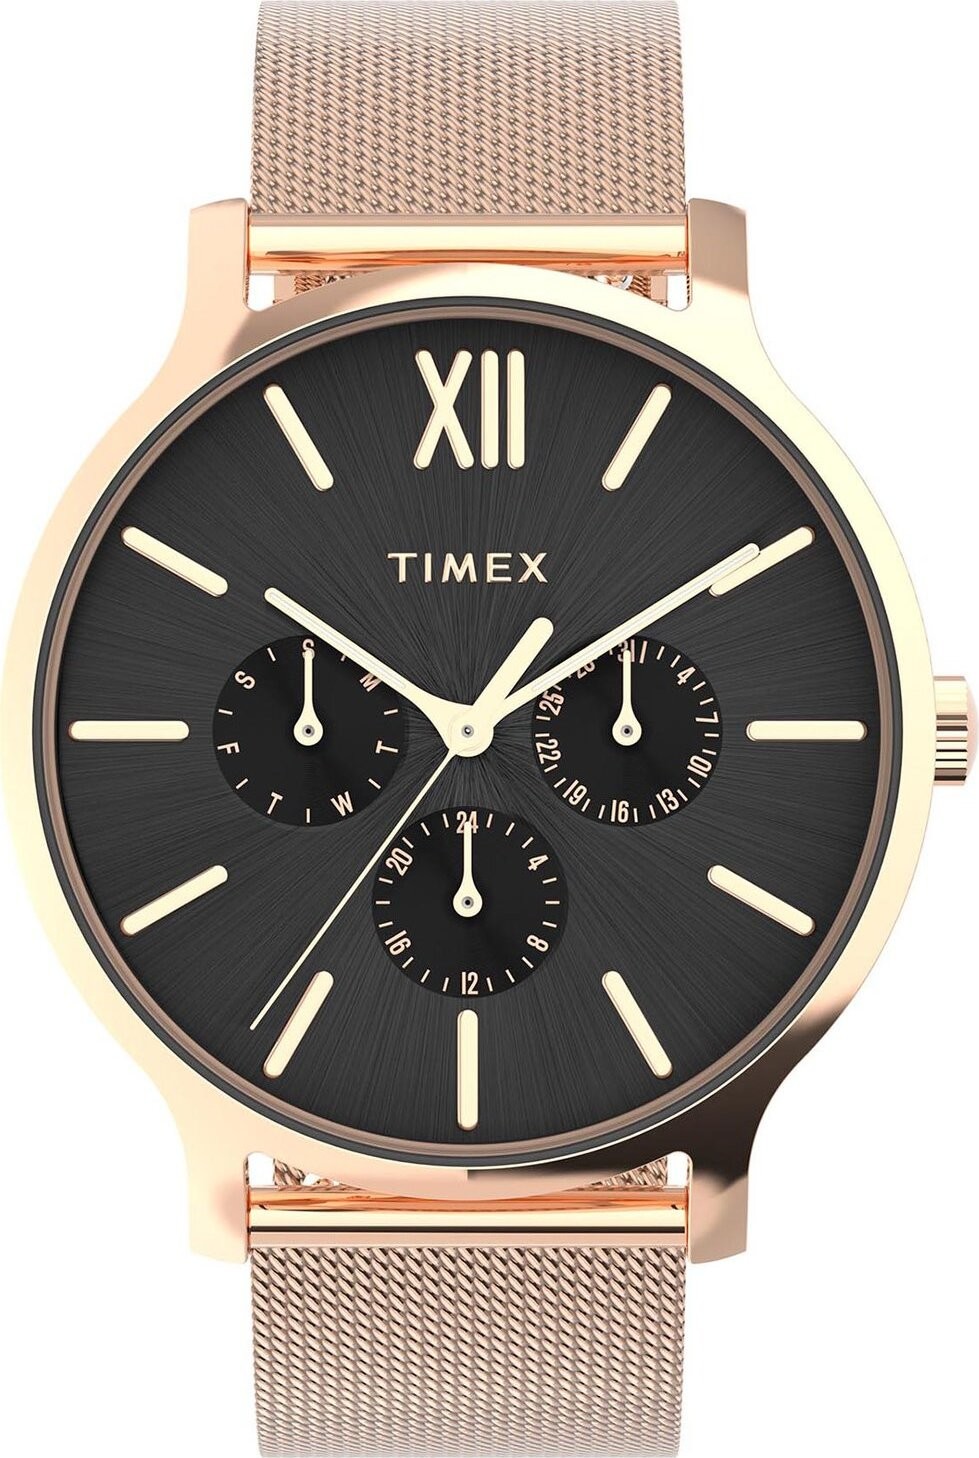 Hodinky Timex Transcend TW2W19900 Gold/Black